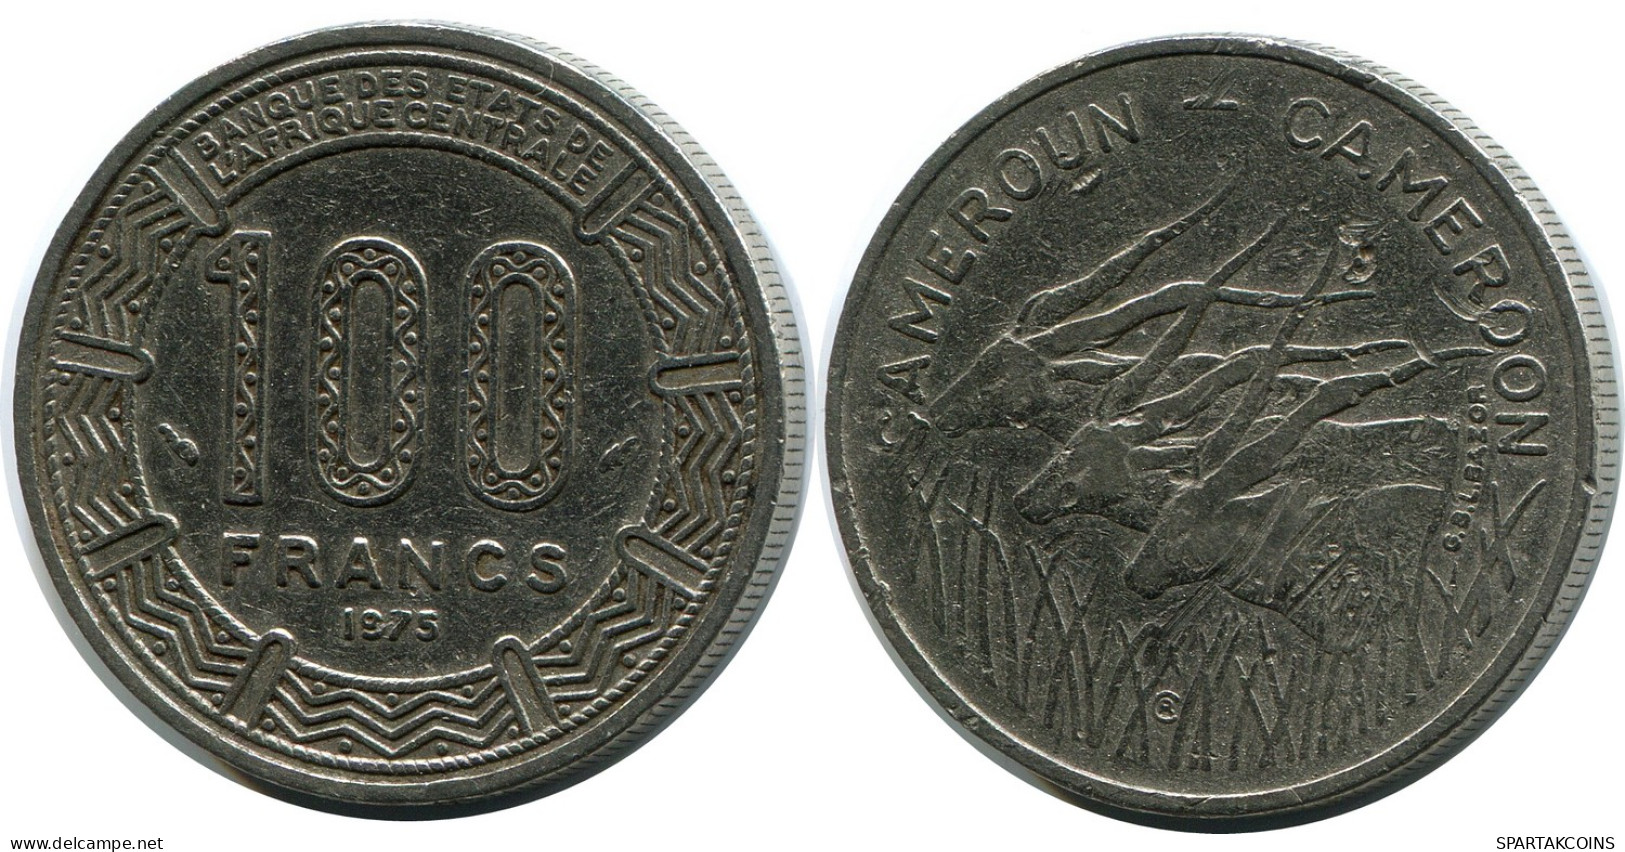 100 FRANCS 1975 CAMEROON Coin #AP854.U - Camerun